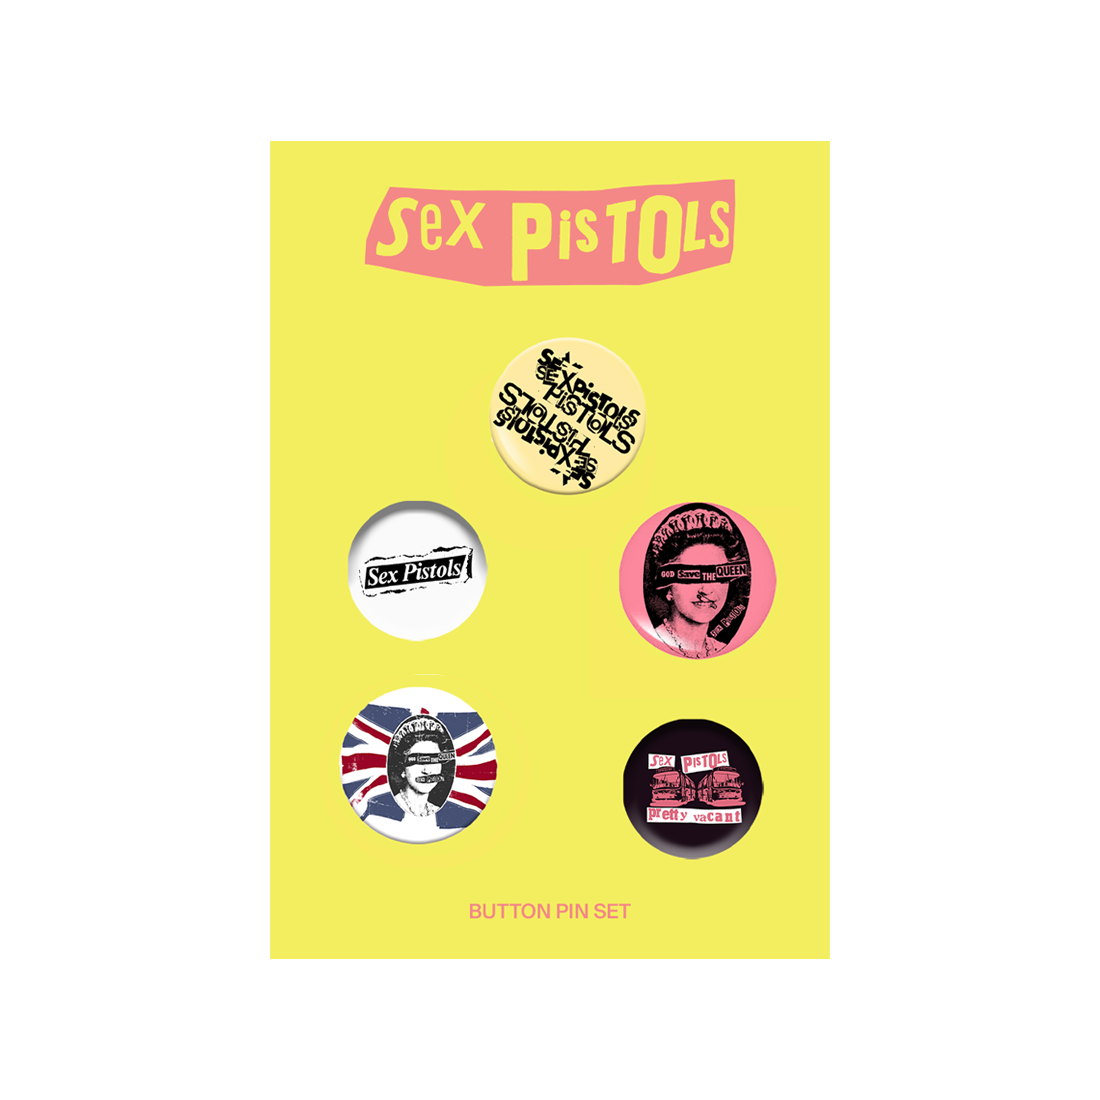 Sex Pistols - Sex Pistols Buttons Set